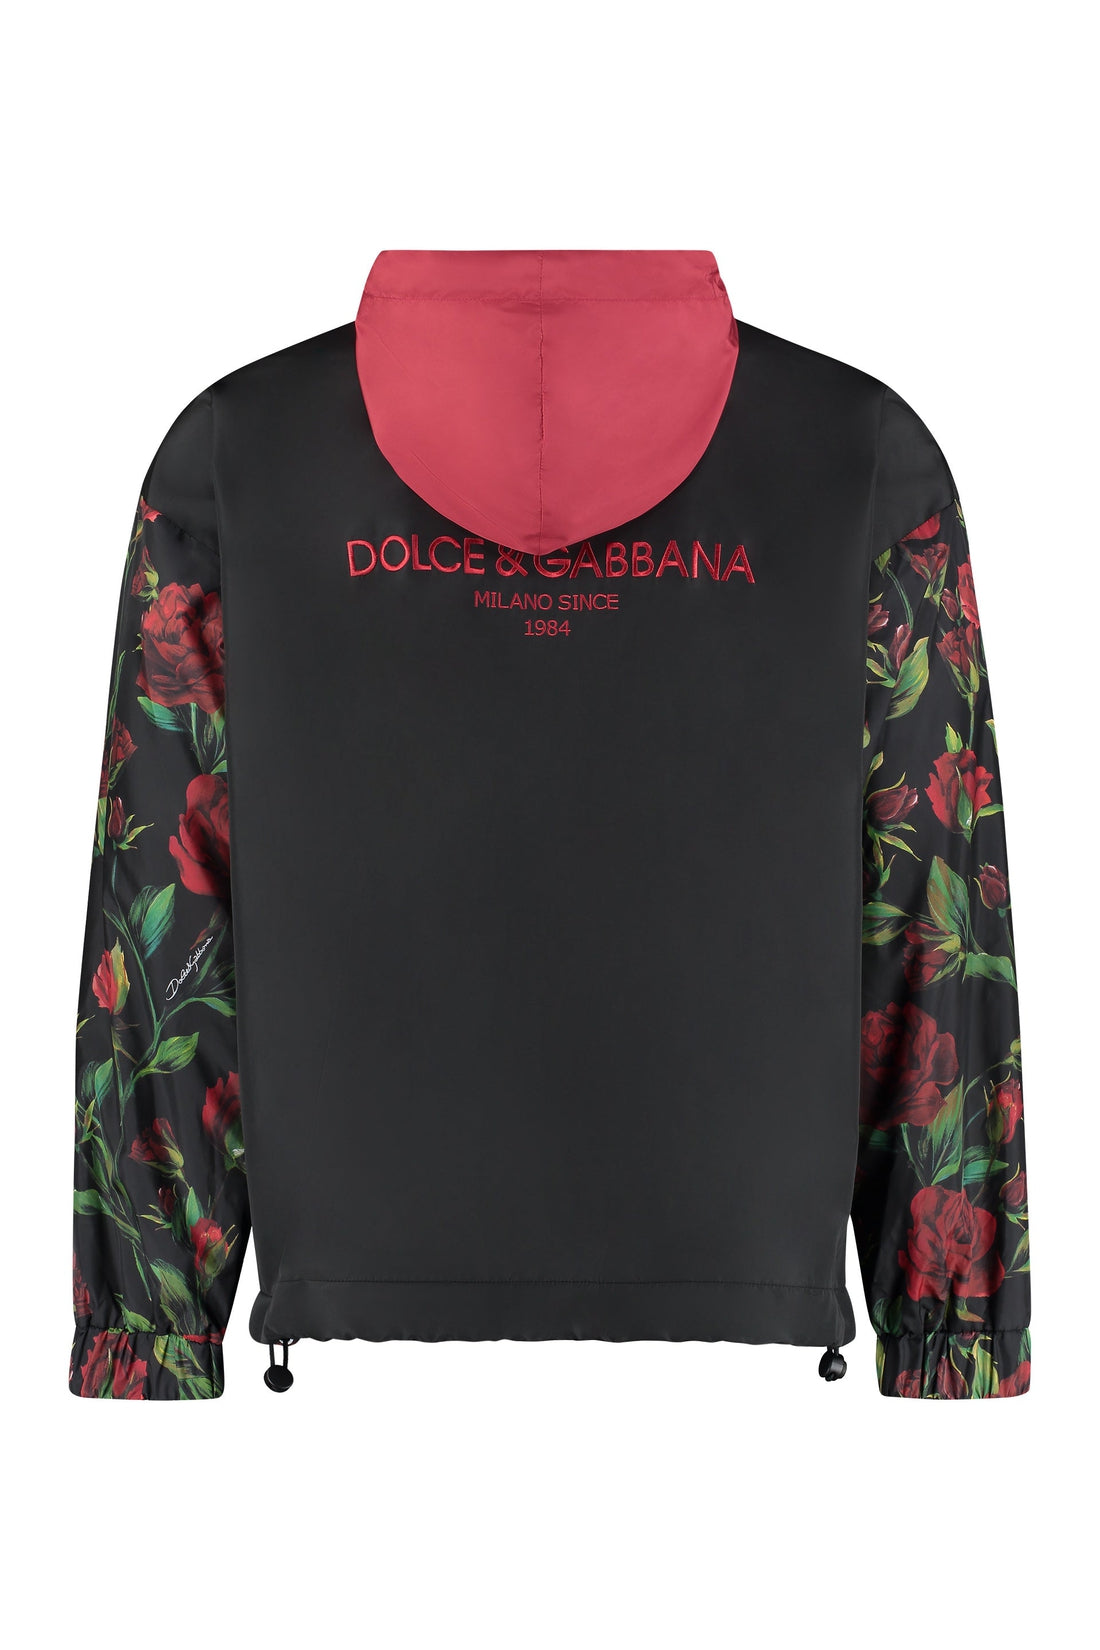 Dolce & Gabbana-OUTLET-SALE-Hooded windbreaker-ARCHIVIST